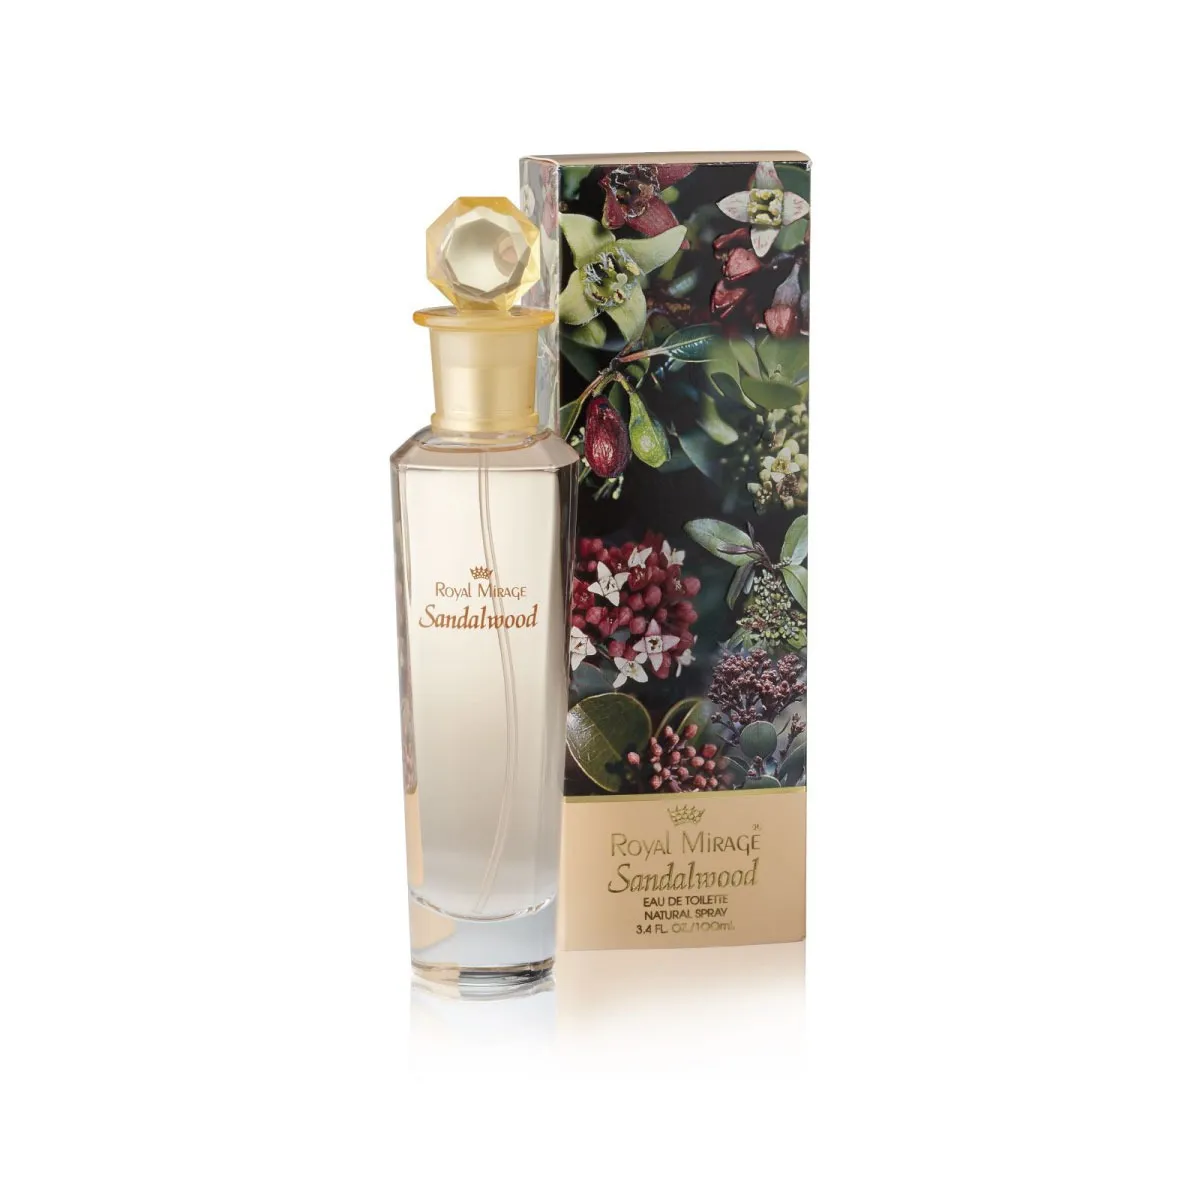 Royal Mirage Sandalwood Perfume Price in Pakistan